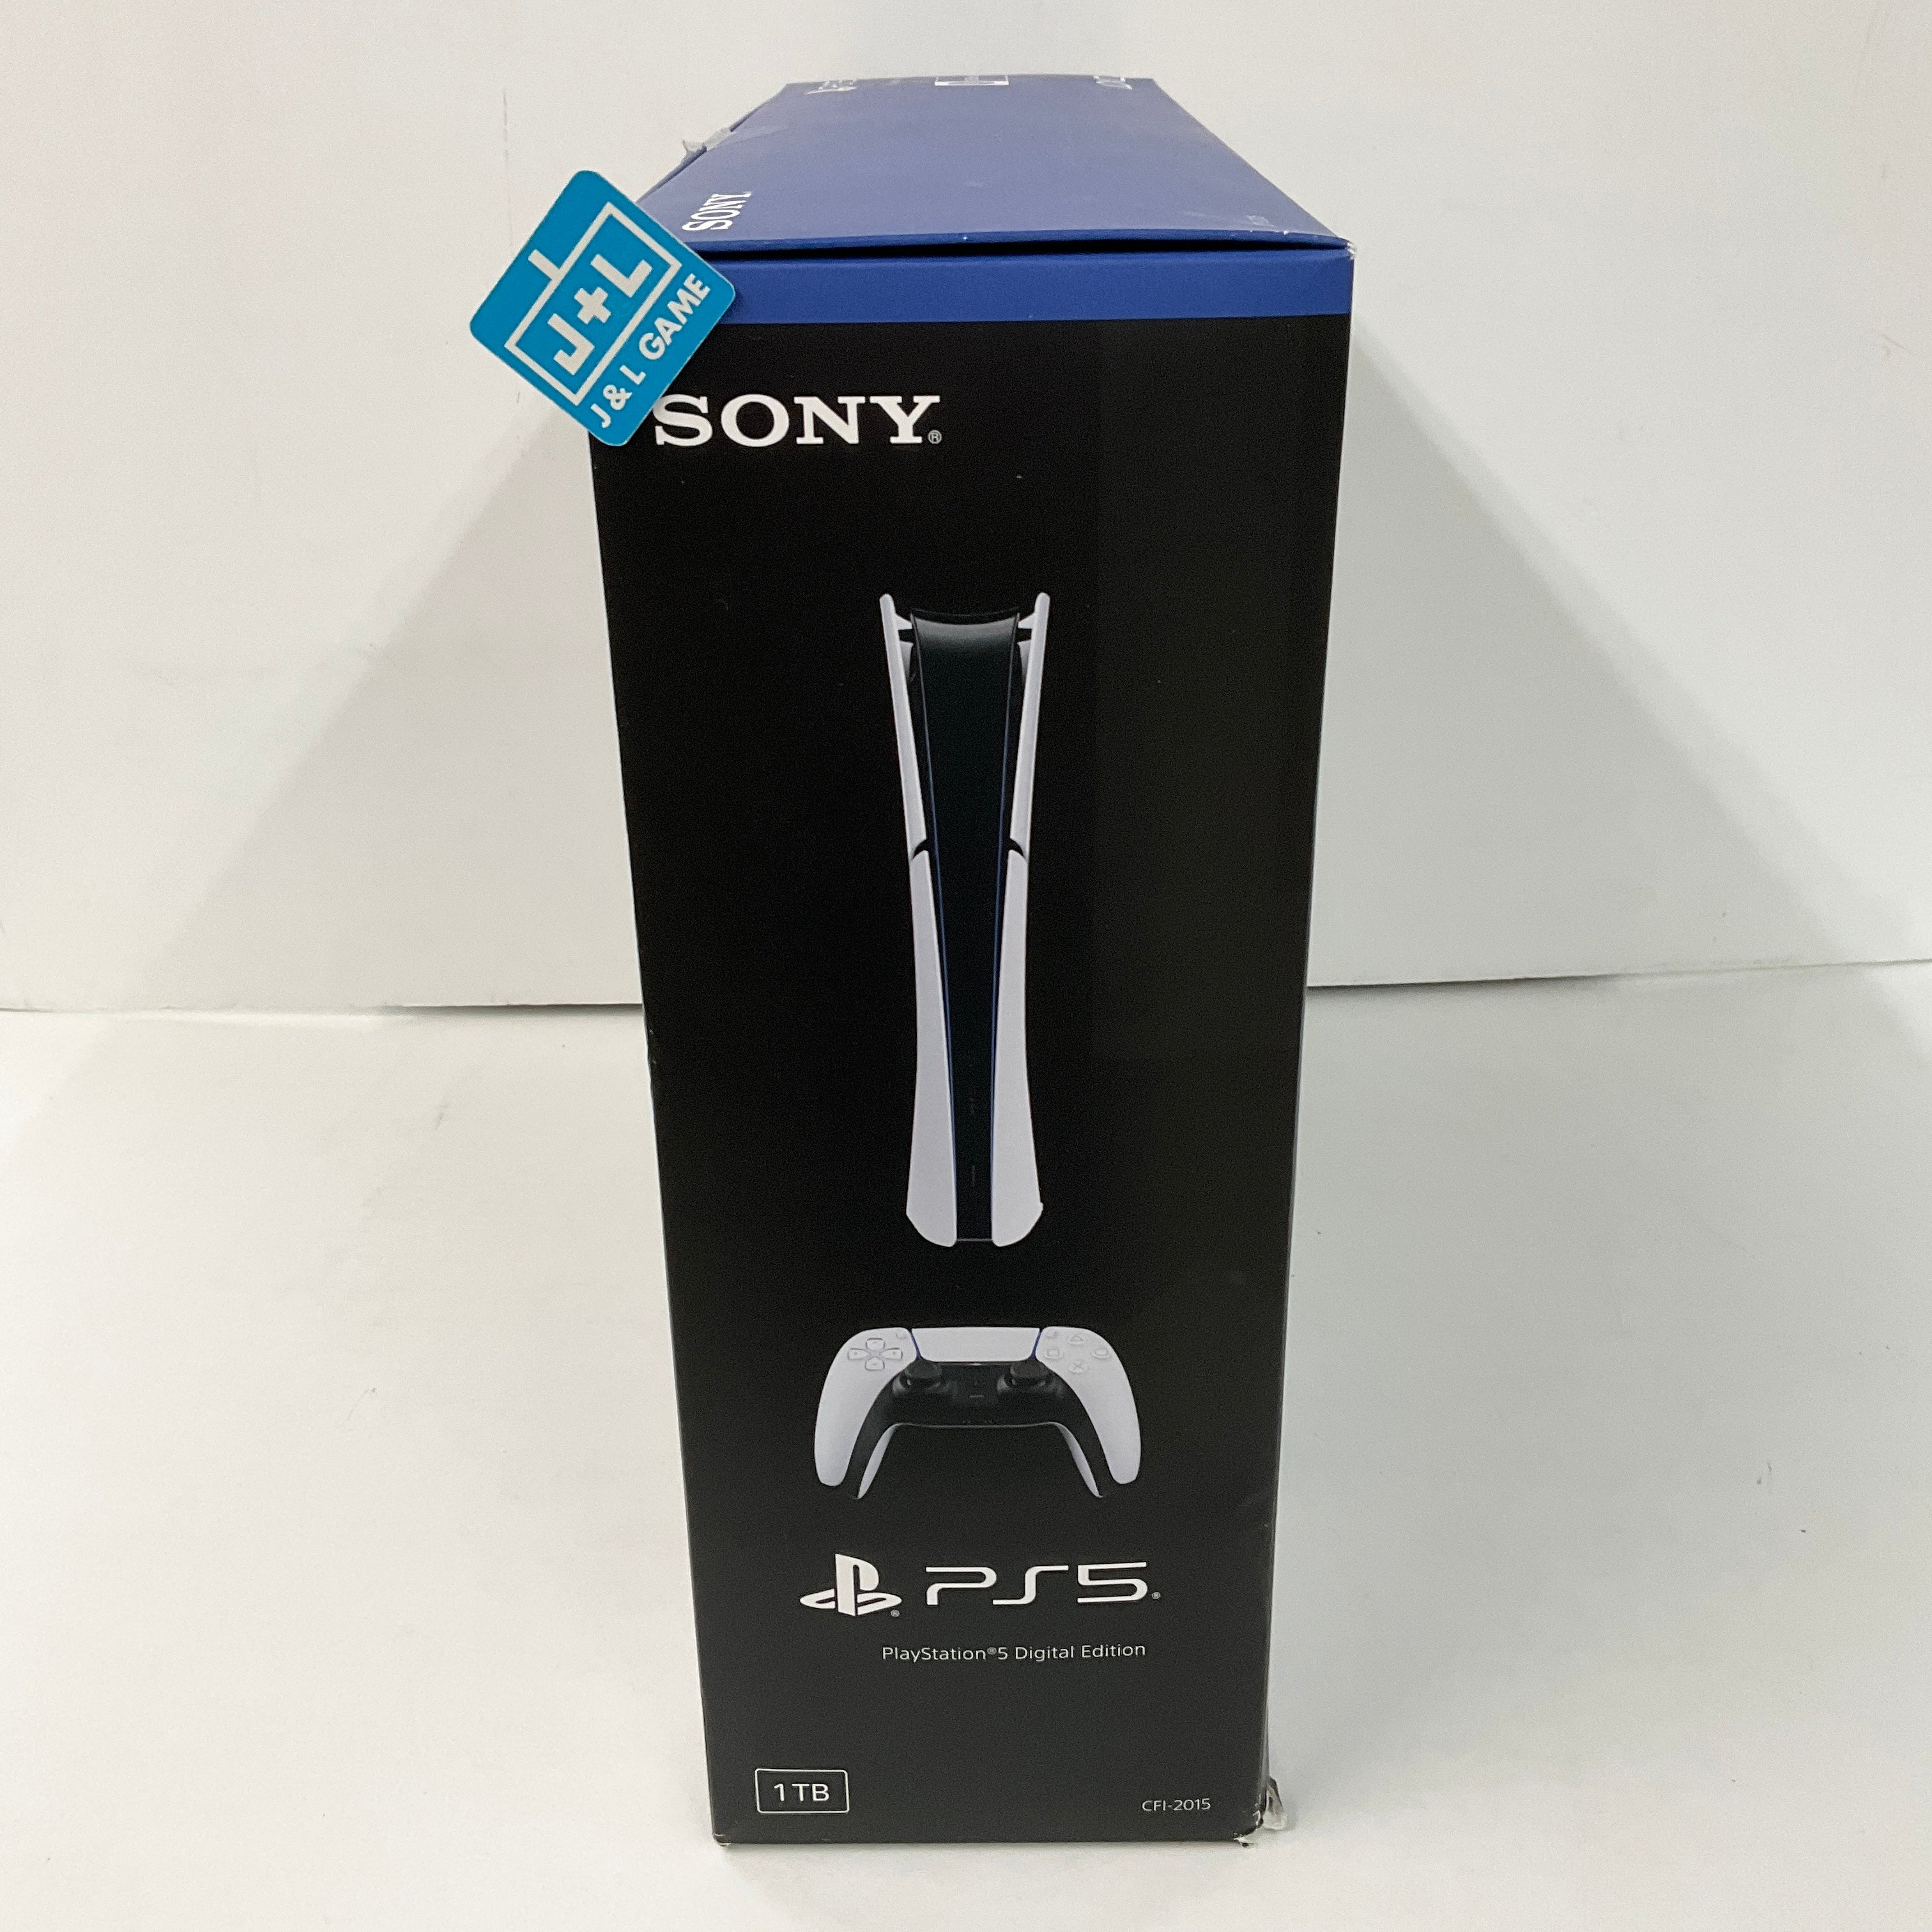 SONY PlayStation 5 Slim Digital Edition Console (CFI-2015) - (PS5) PlayStation 5 Consoles PlayStation   